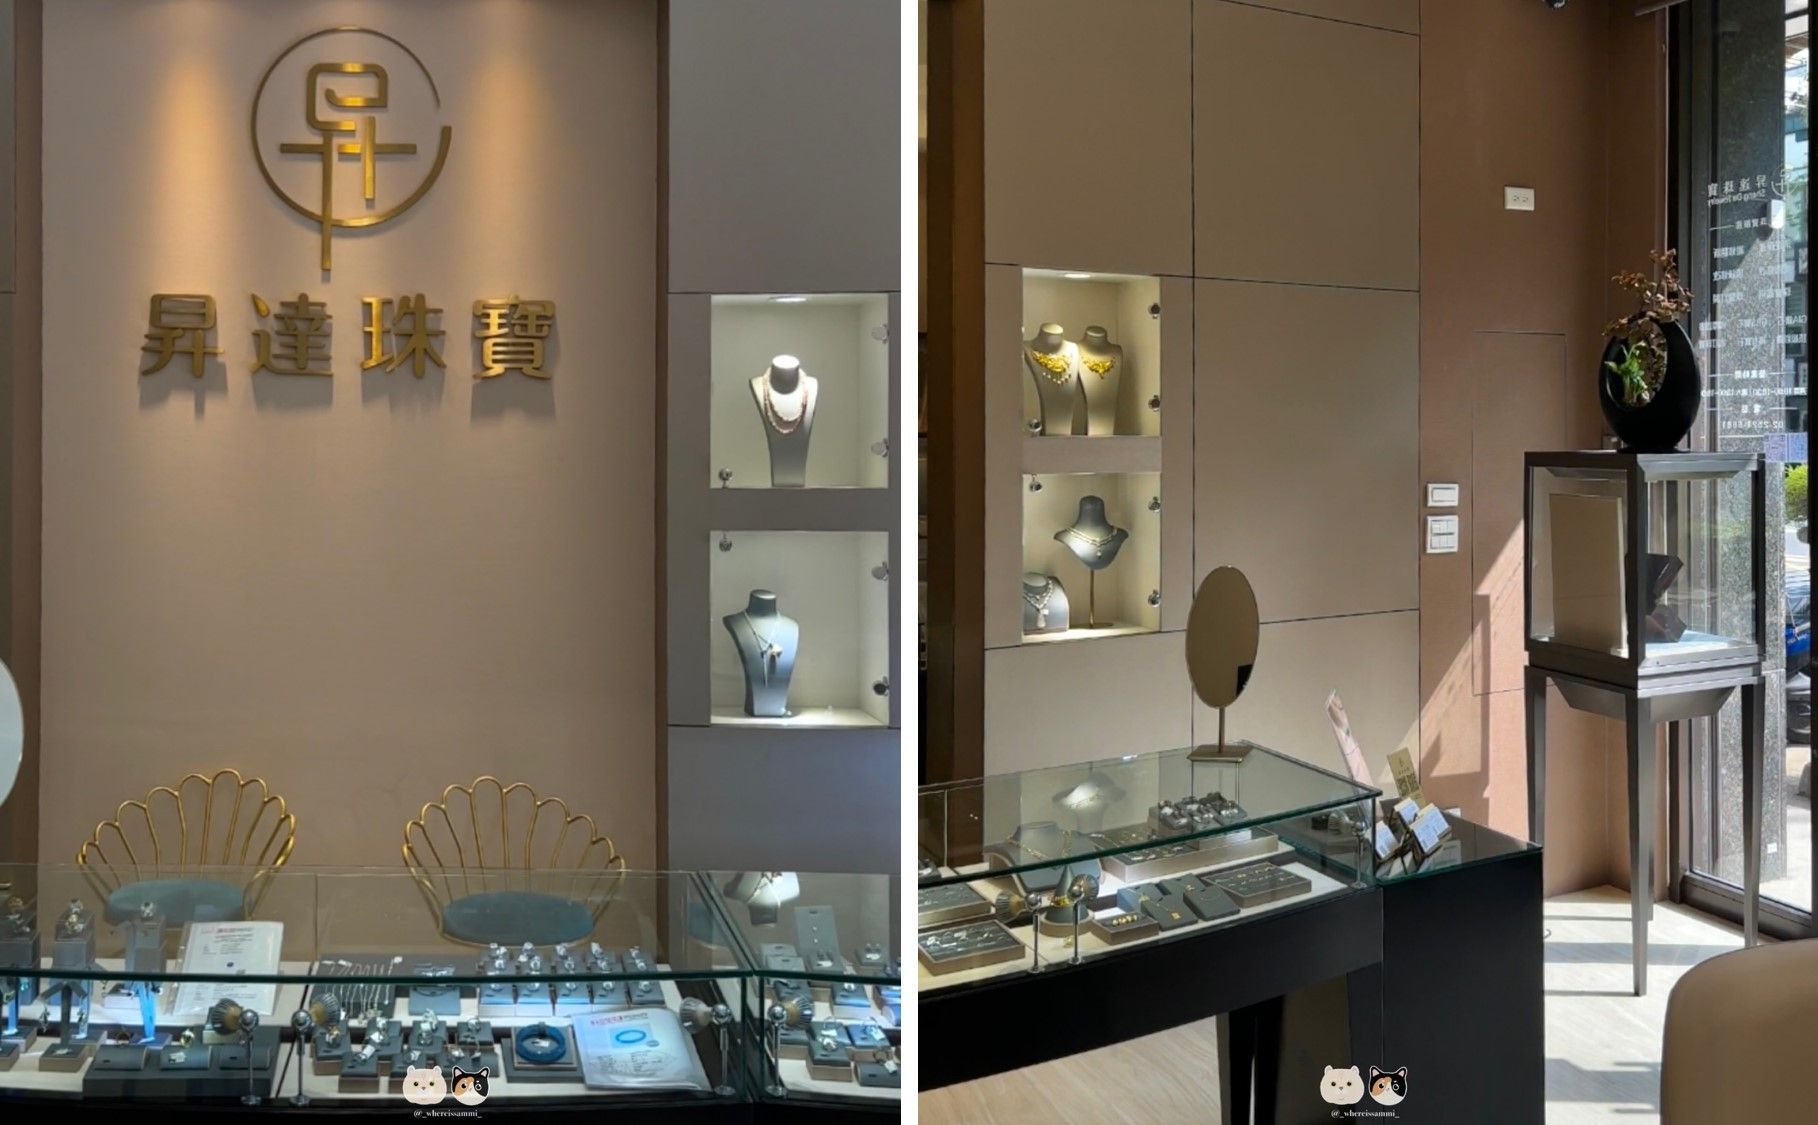 台北中山區珠寶訂製維修-昇達珠寶&昇昌珠寶工坊．最快當日10